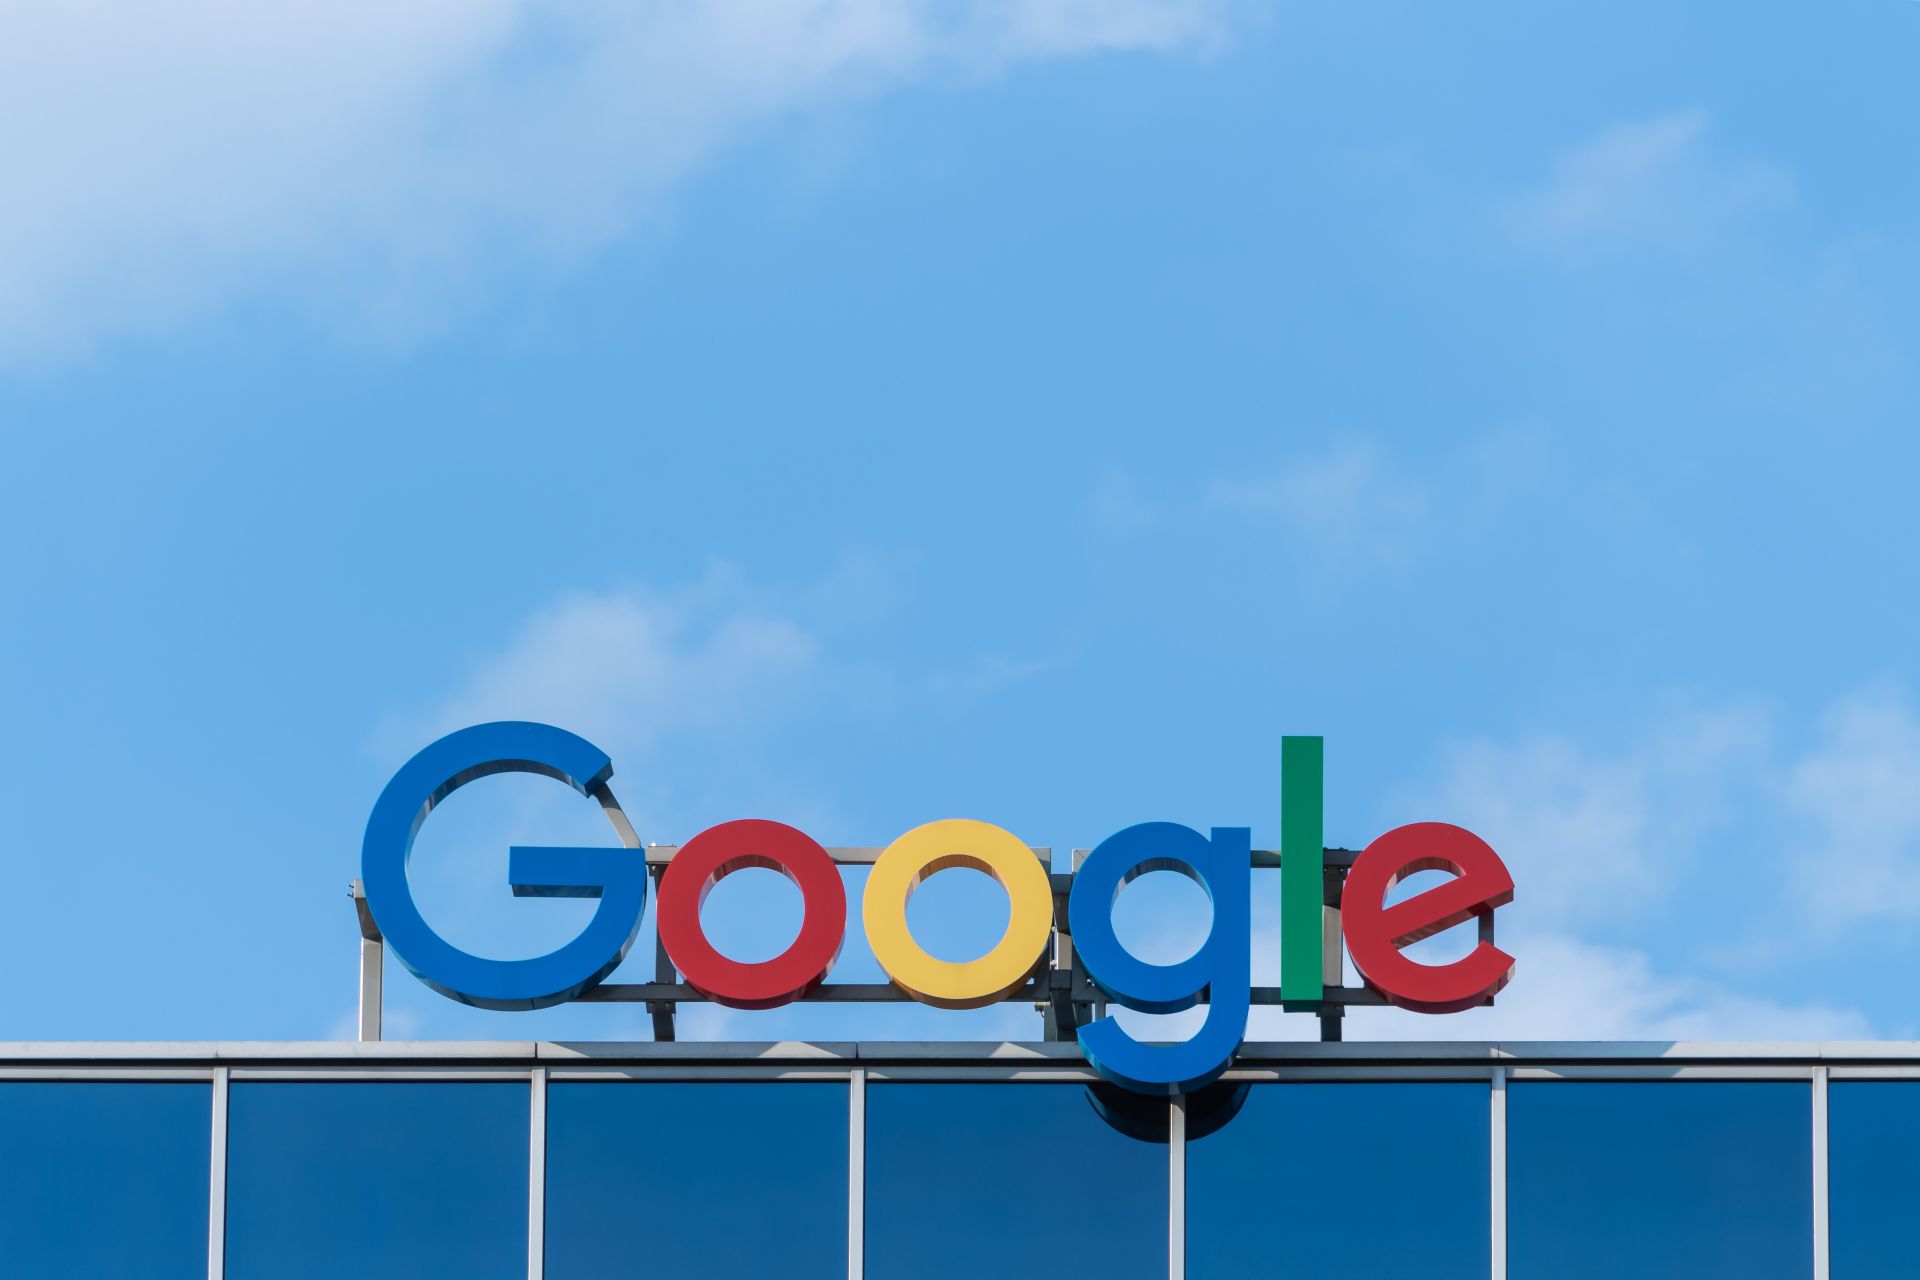 سامسونگ گوگل را به خاطر هوش مصنوعی بایدو ارنی کنار بگذارد